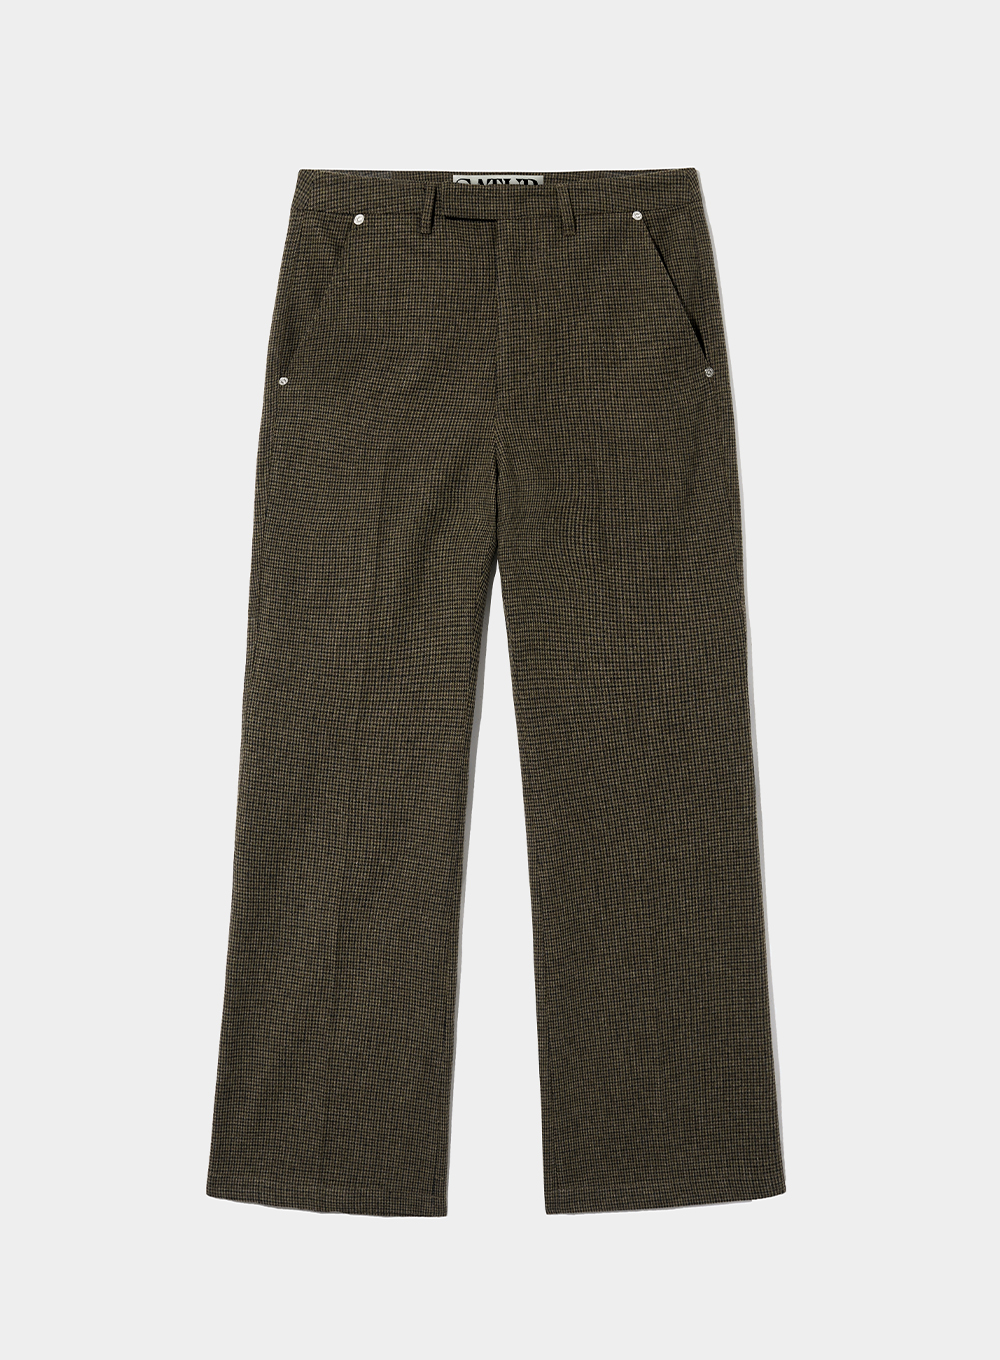 [10월 13일 예약배송] Check Wool Blend Flare Pants - Heritage Brown